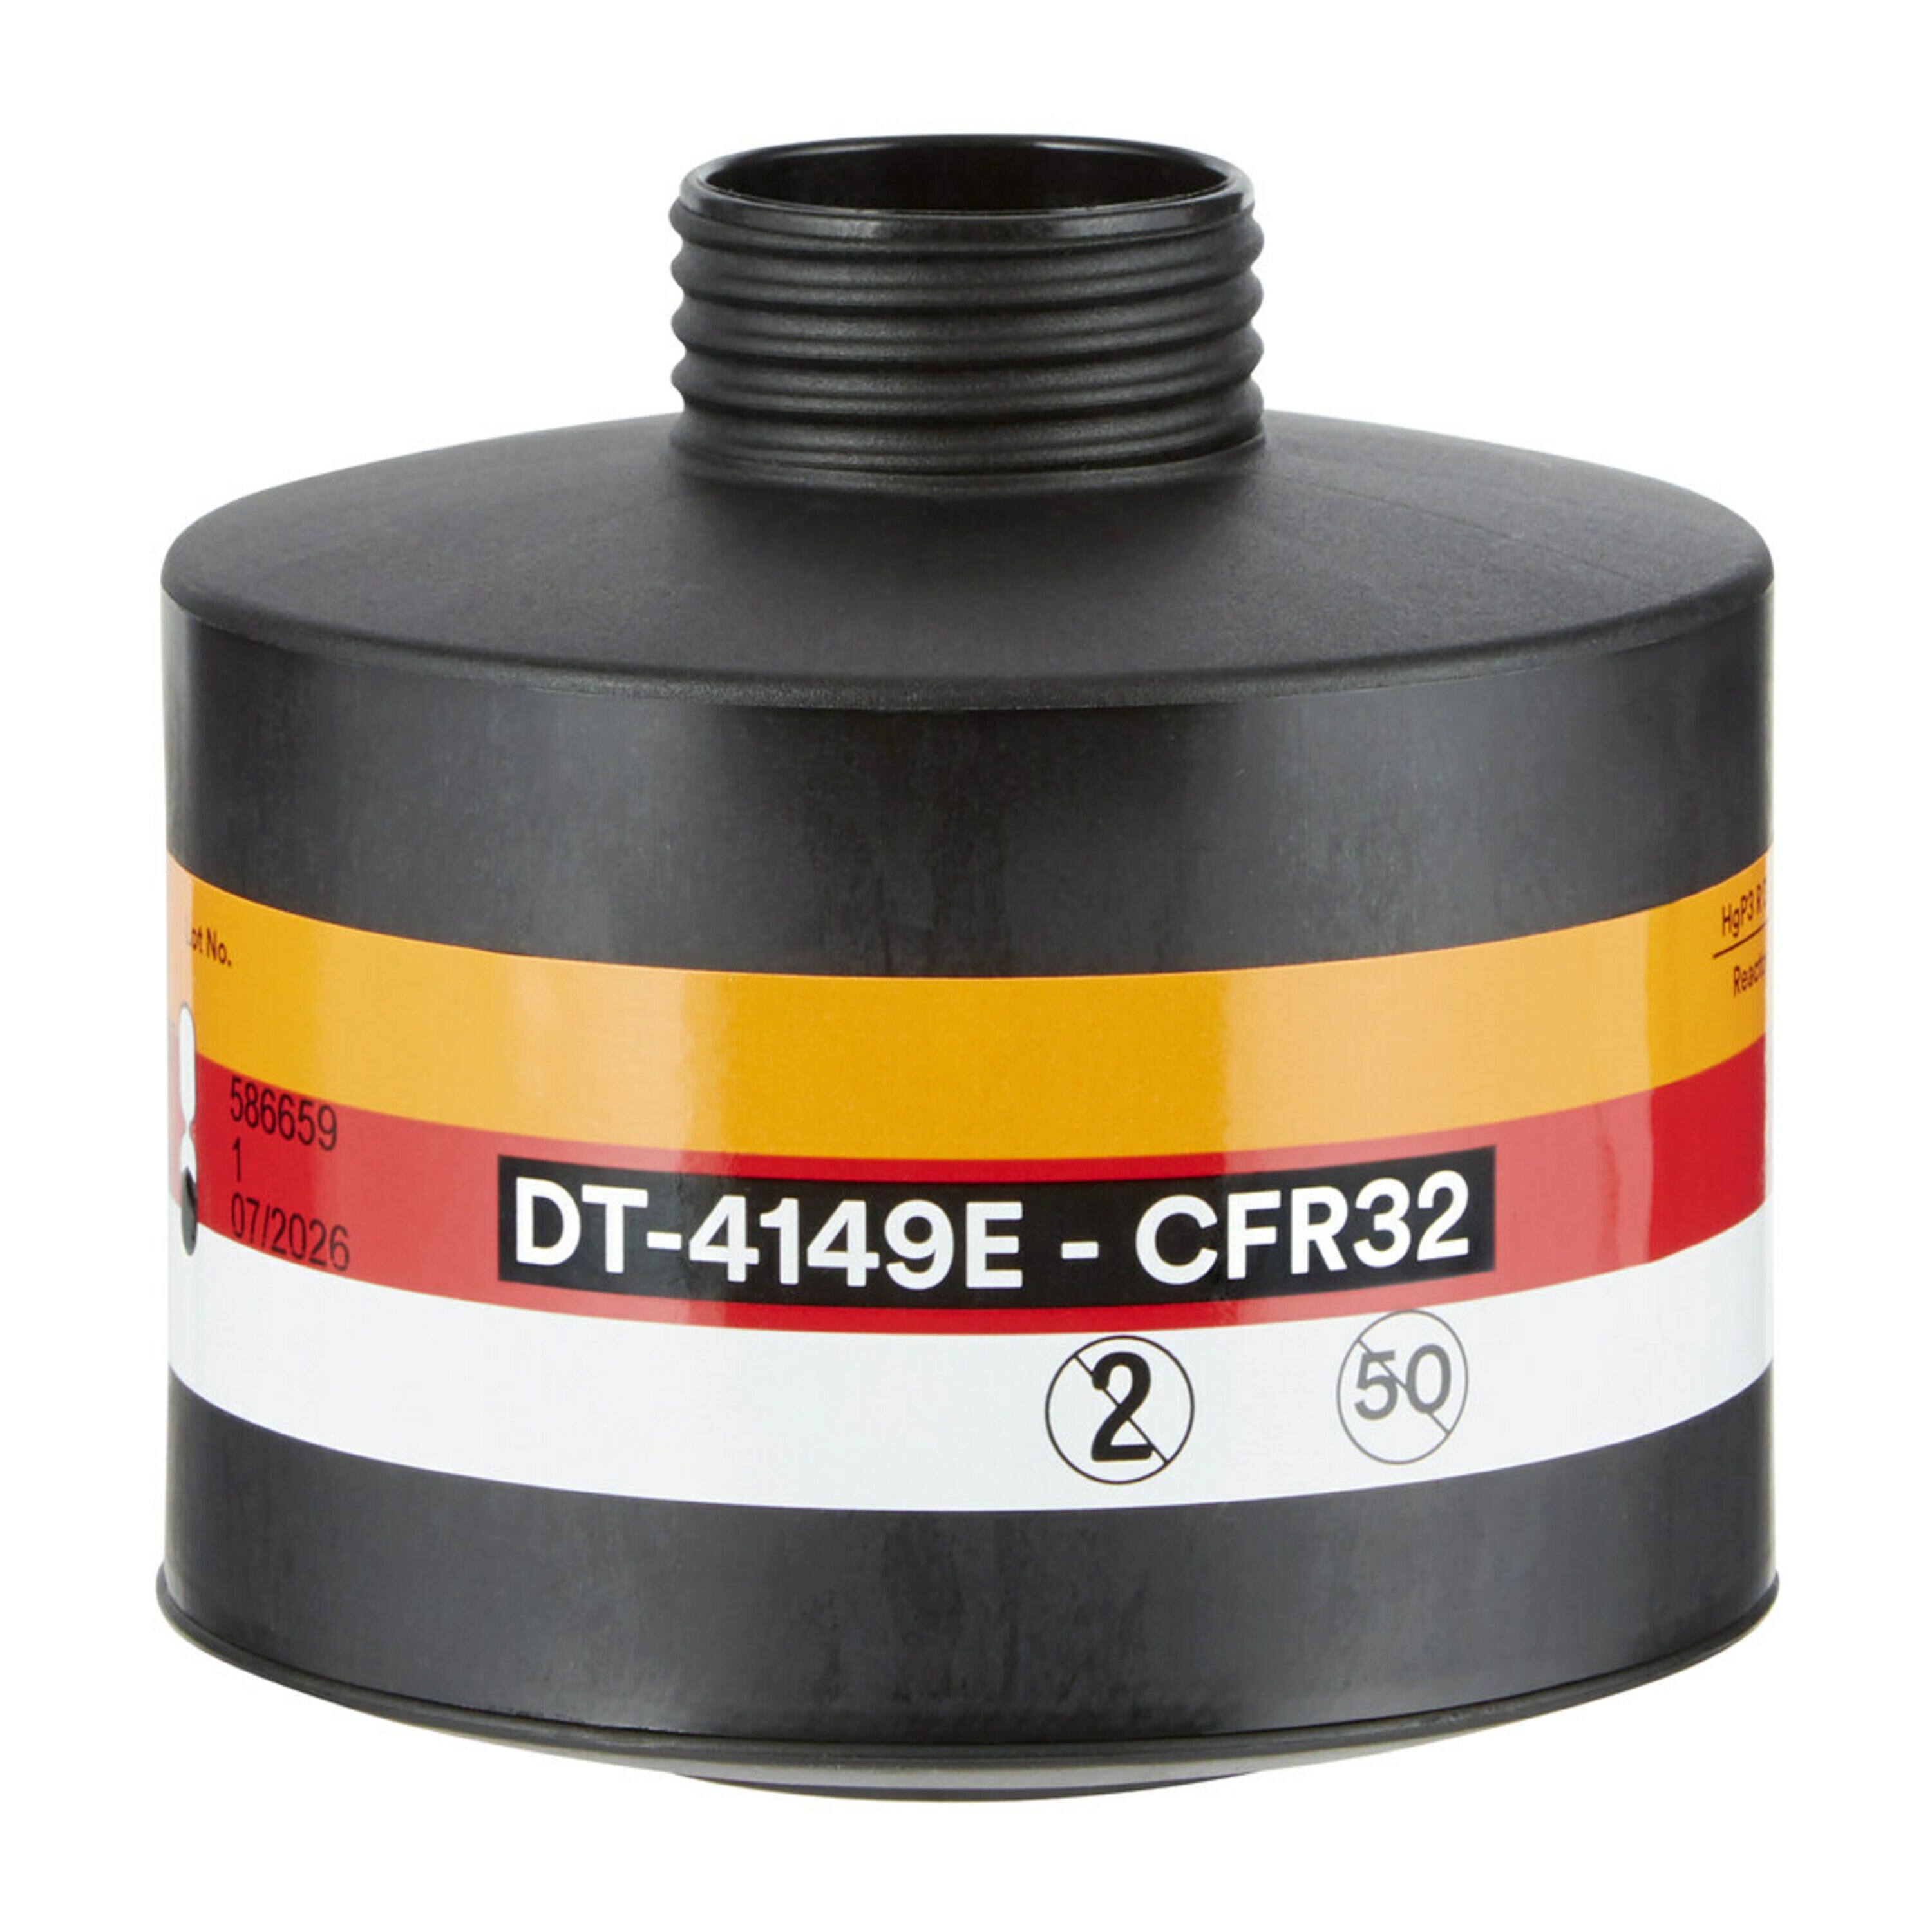 3M Combinatiefilter, CFR32-reactor HgP3 R D (LI2) DT-4149E